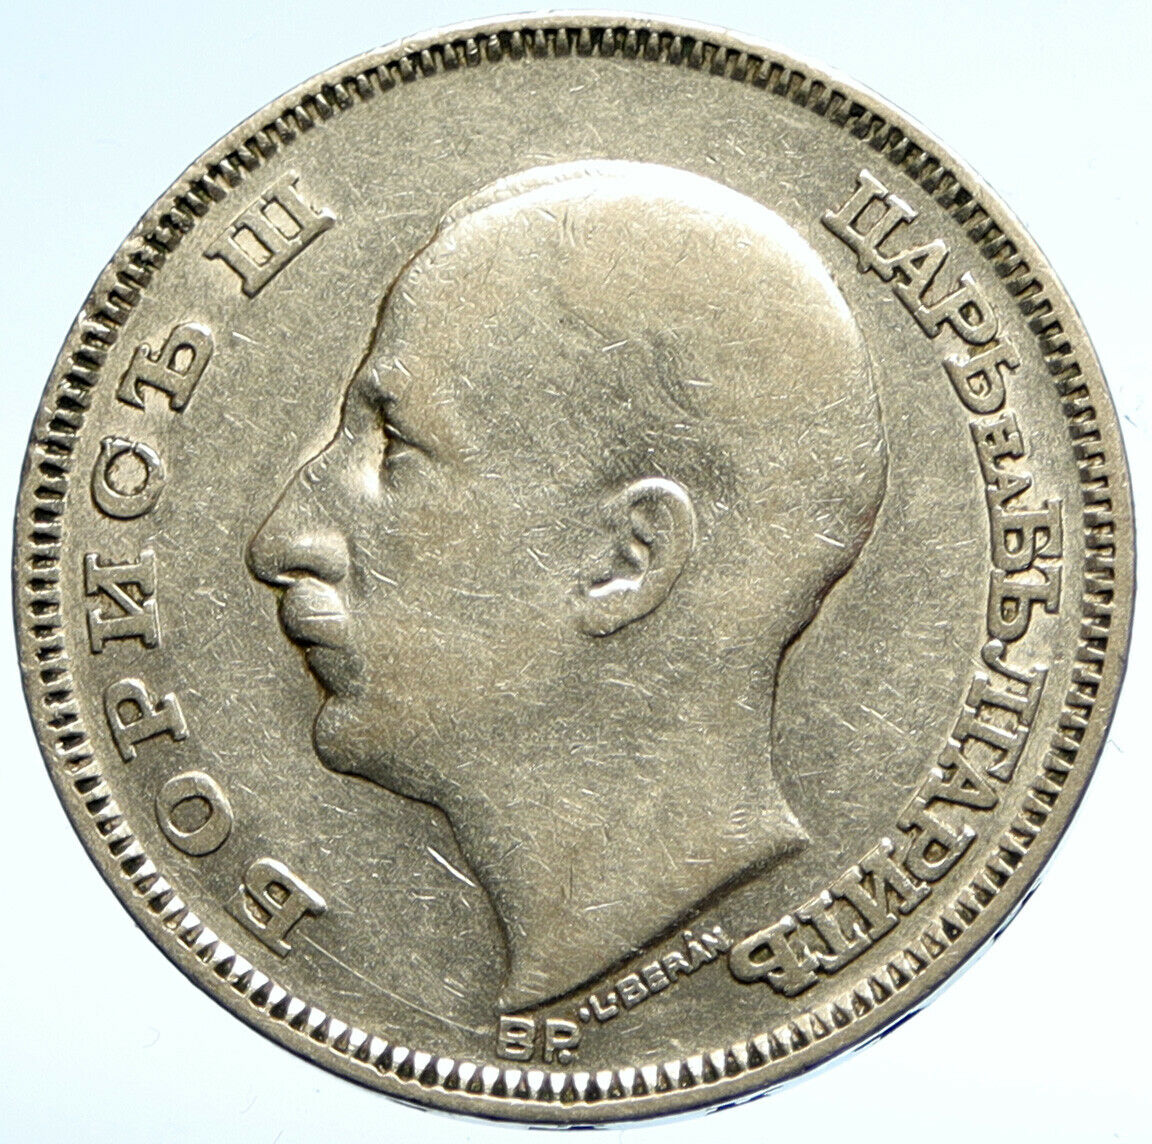 1930 BULGARIA Tsar Boris III Large VINTAGE European Silver 100 Leva Coin i104736